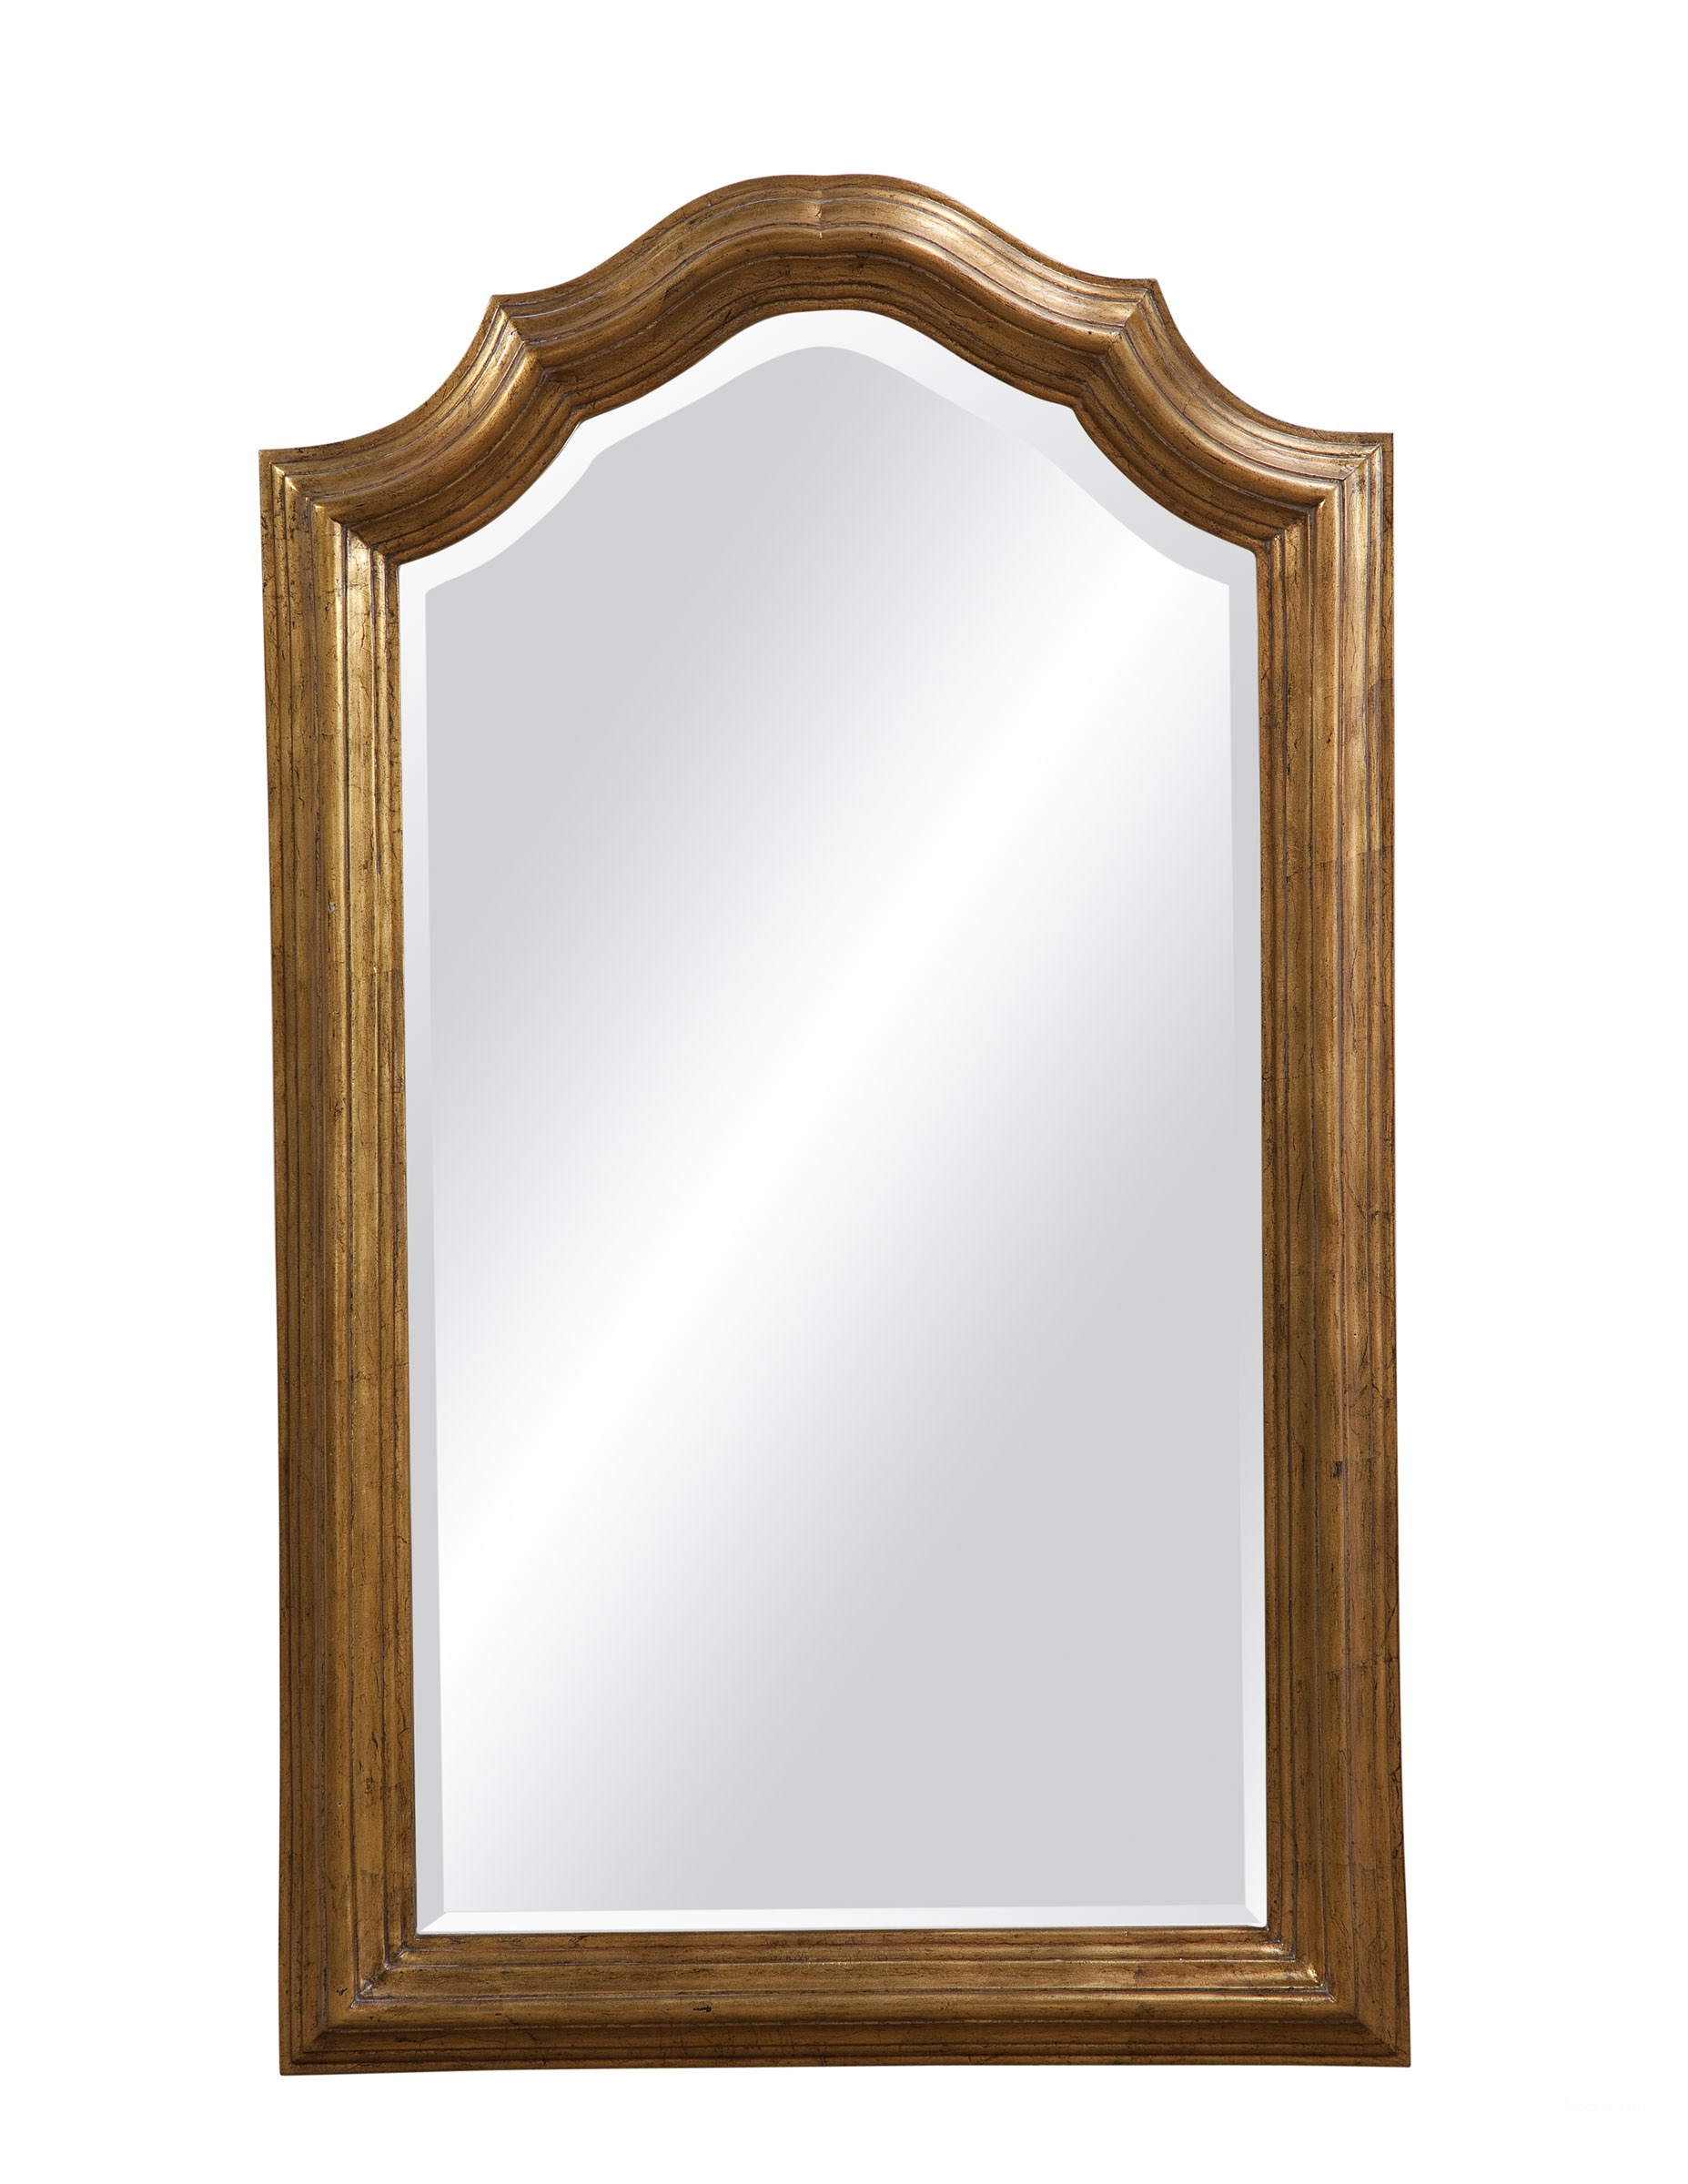 Купить зеркало в оренбурге. Зеркало настенное в деревянной раме. Зеркало в раме для прихожей. Настенные зеркала небольшие. Зеркало в деревянной раме для прихожей.